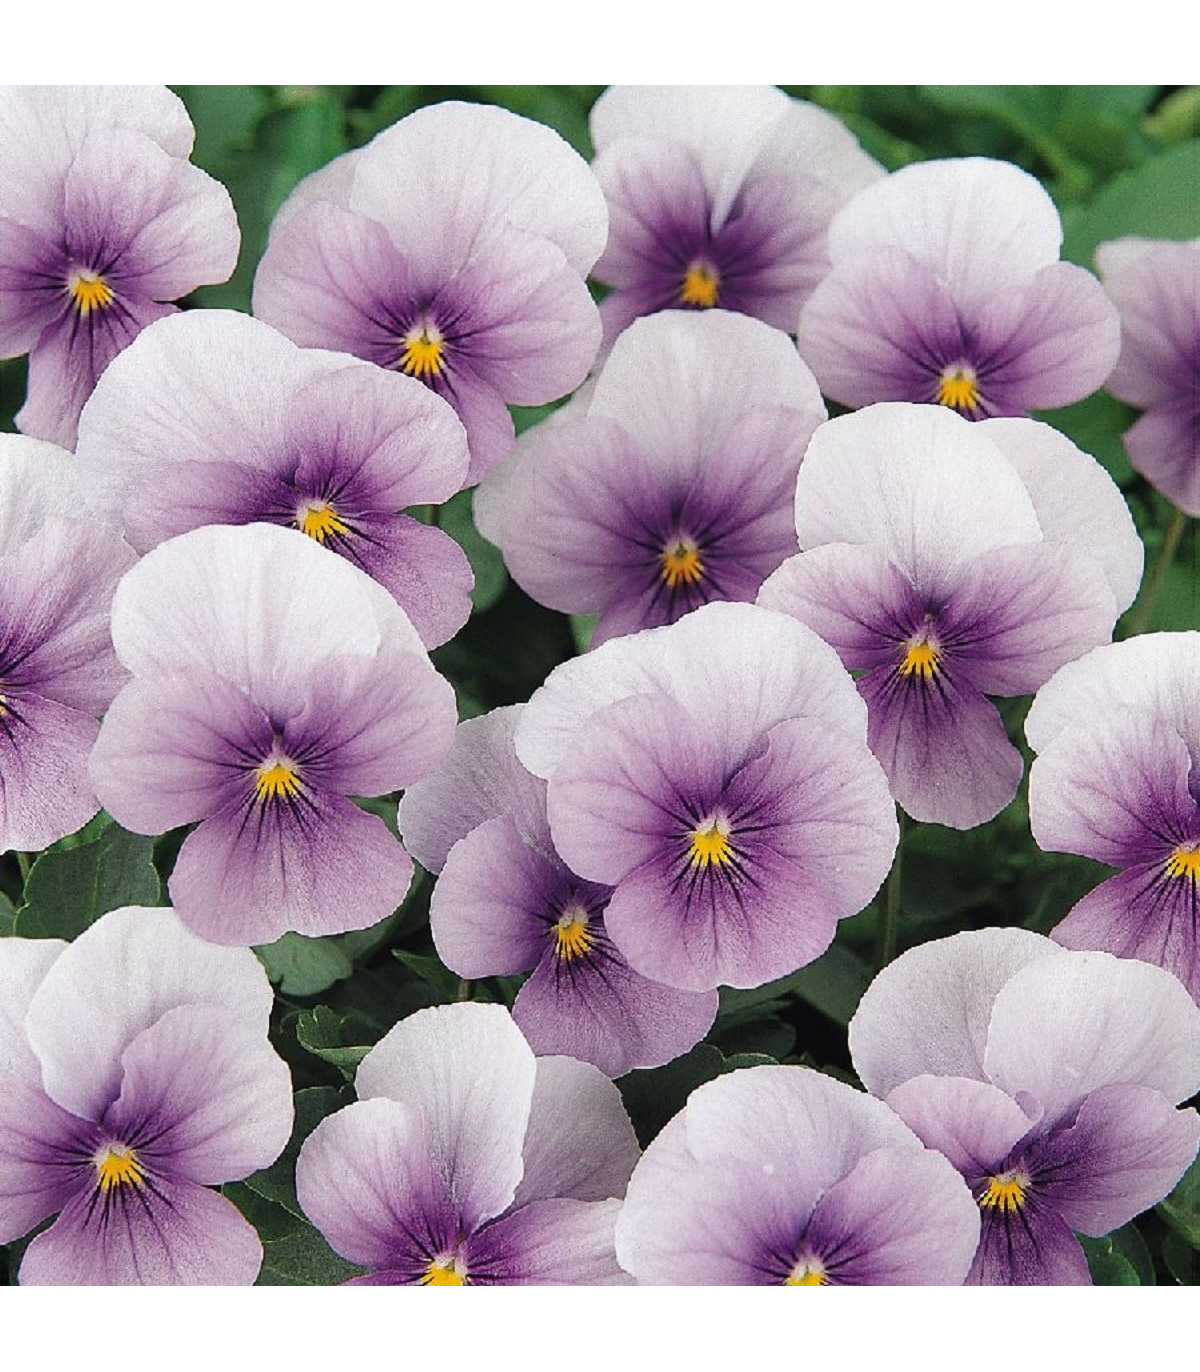 Violka rohatá Sorbet Icy Blue - Viola cornuta - osivo violky - 20 ks